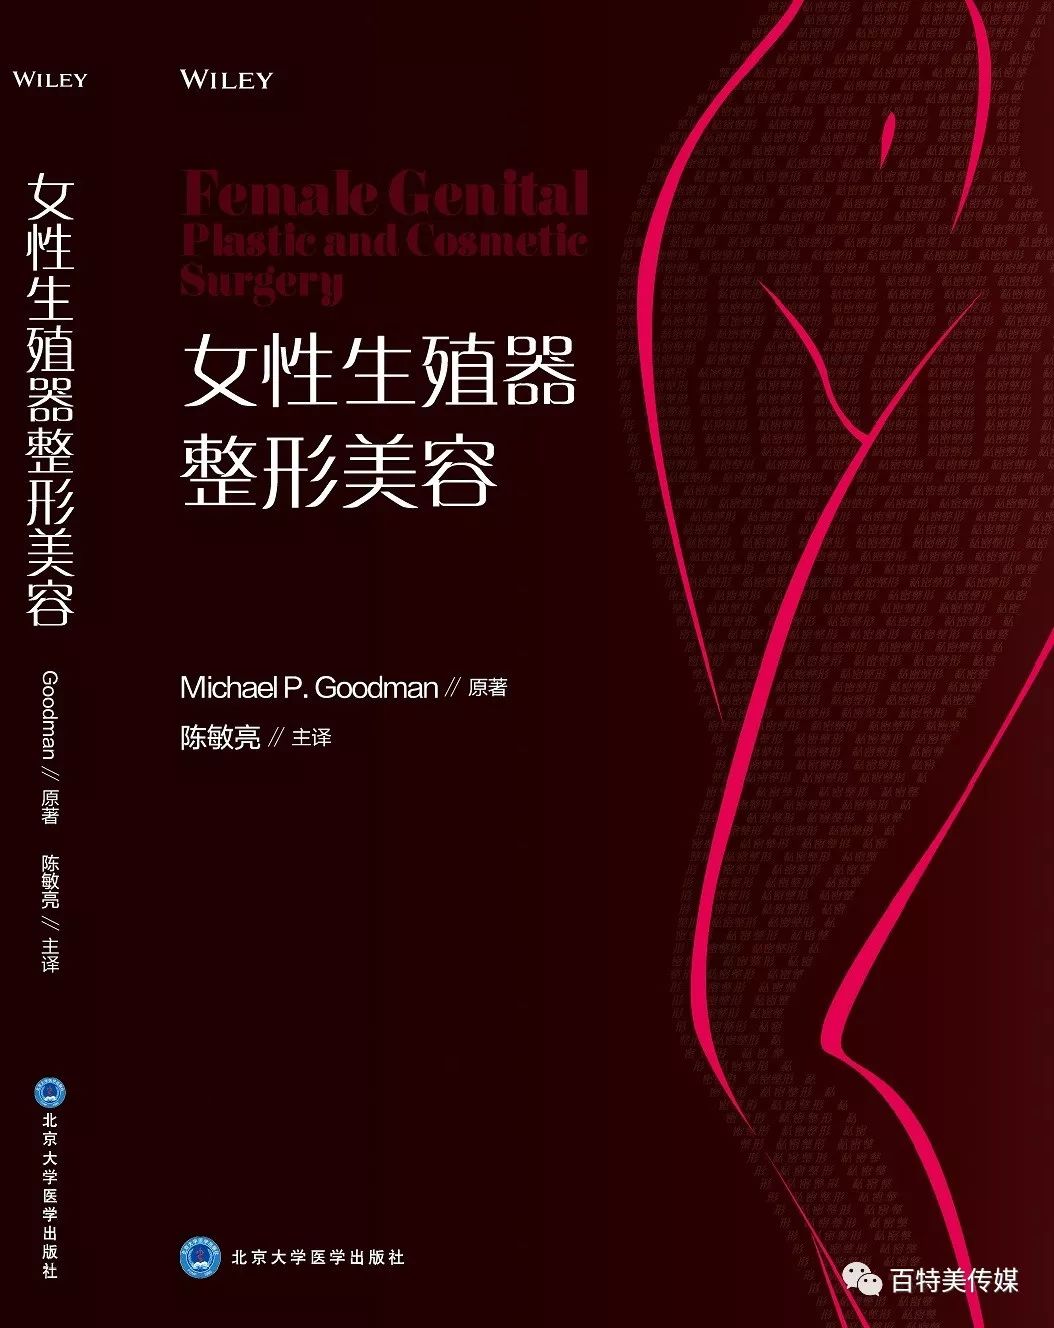 新书预告 陈敏亮教授主译 女性生殖器整形美容 私密整形 即将于12月中旬出版 百特美传媒 微信公众号文章阅读 Wemp